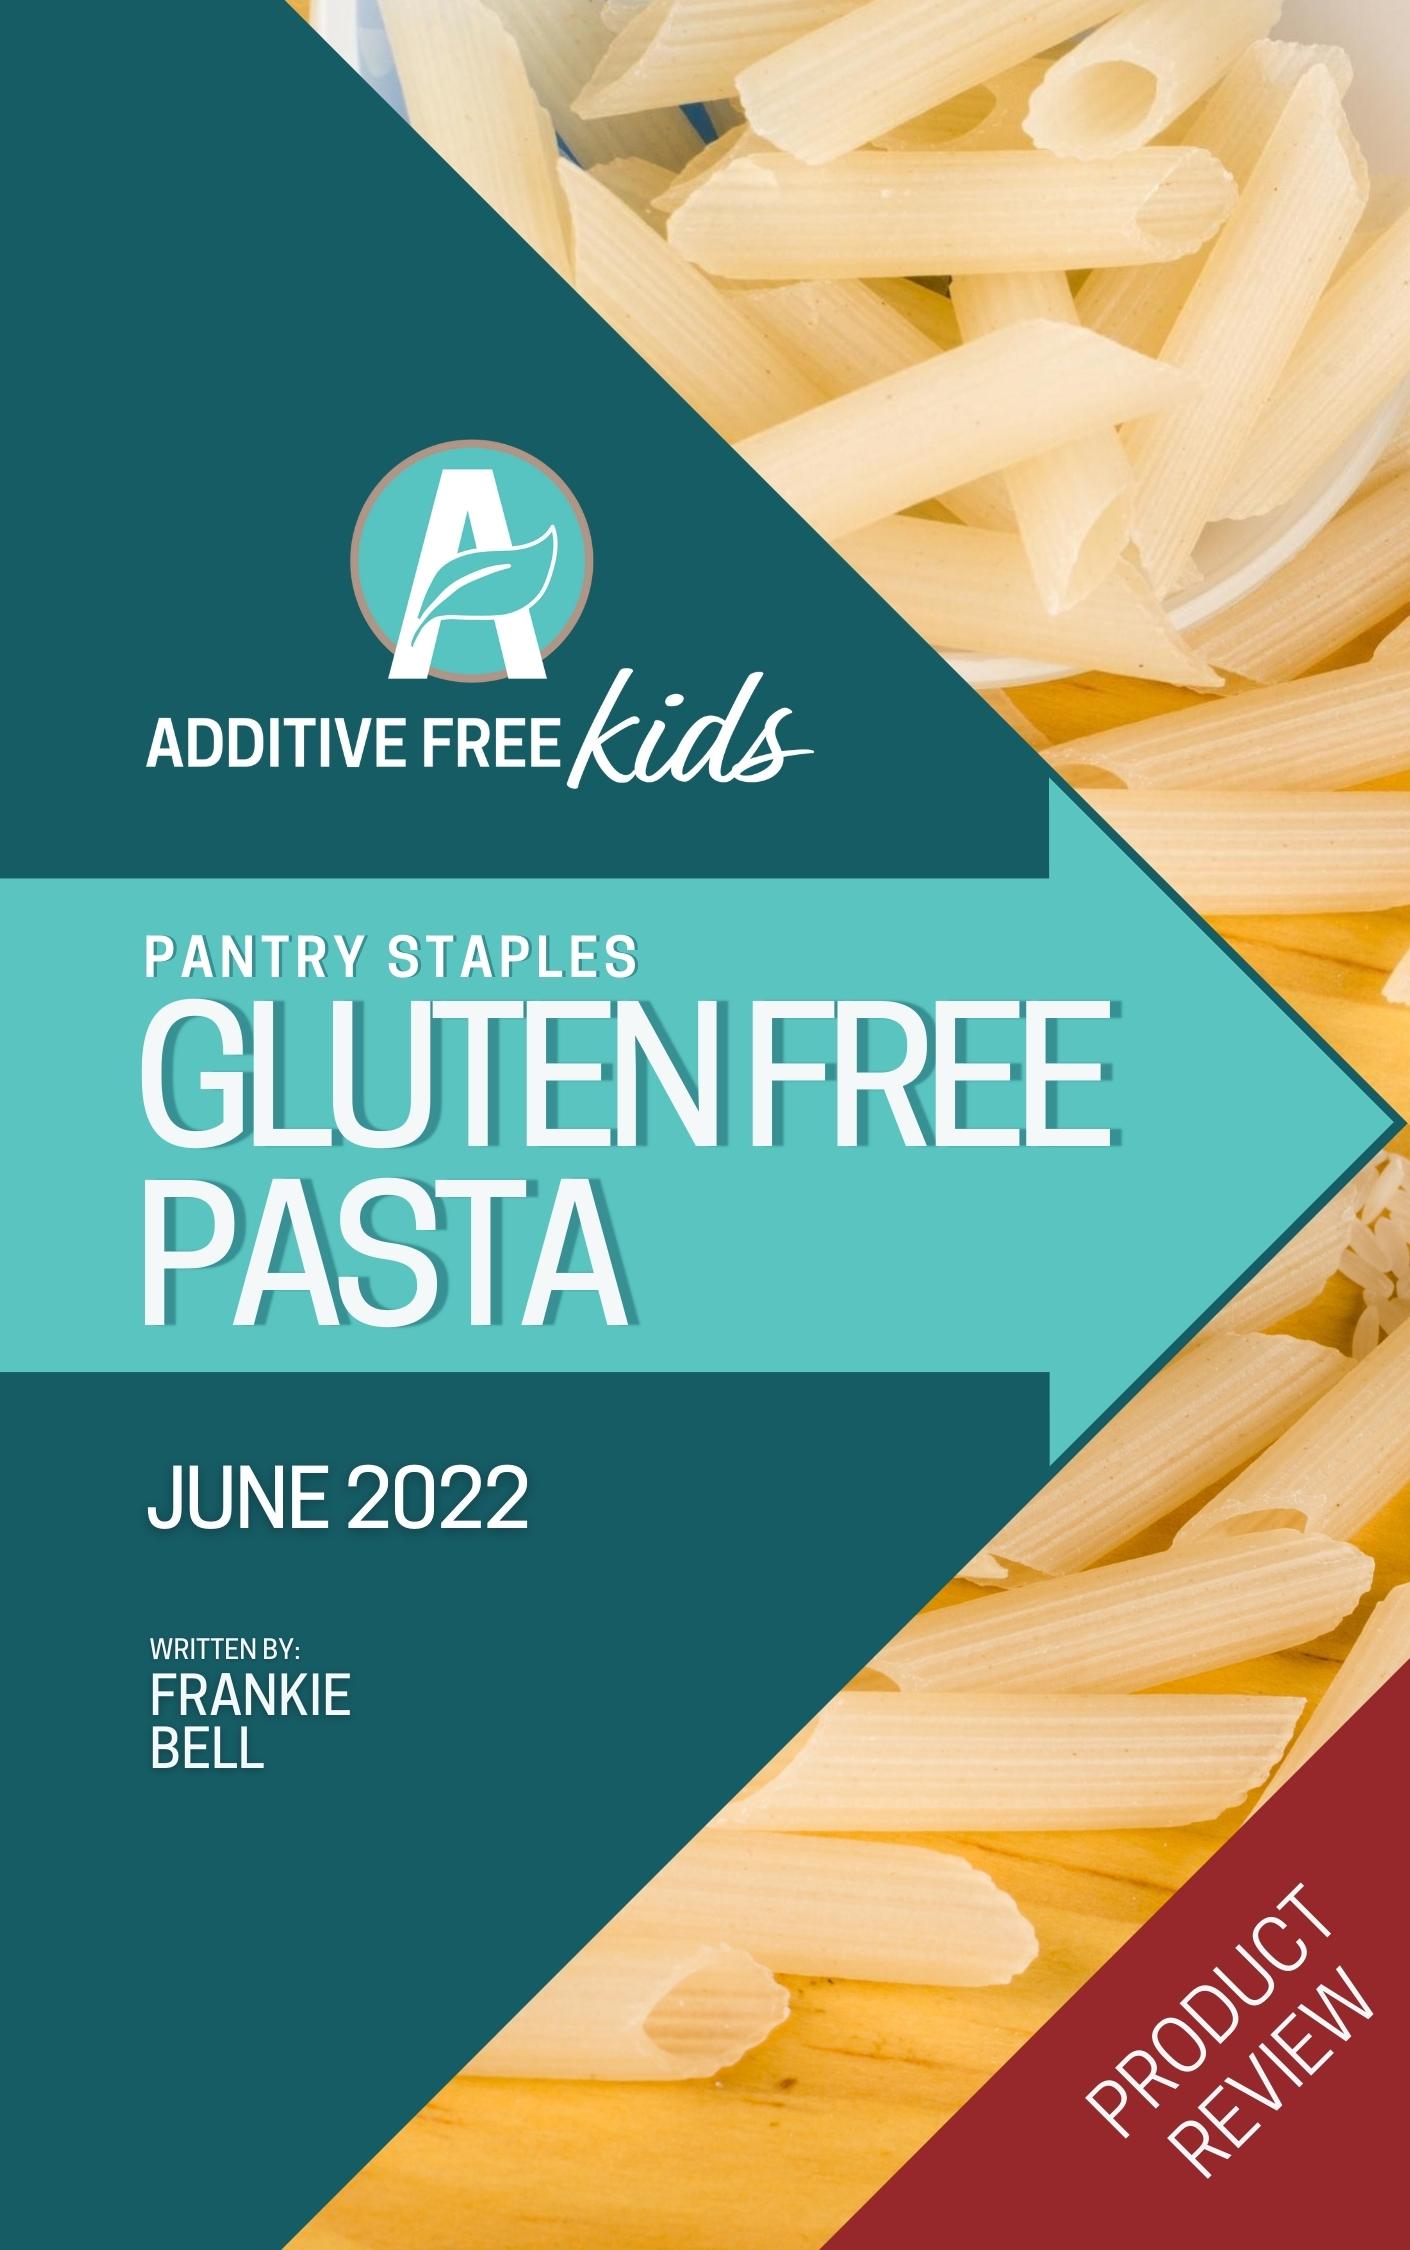 Best gluten free pasta to buy